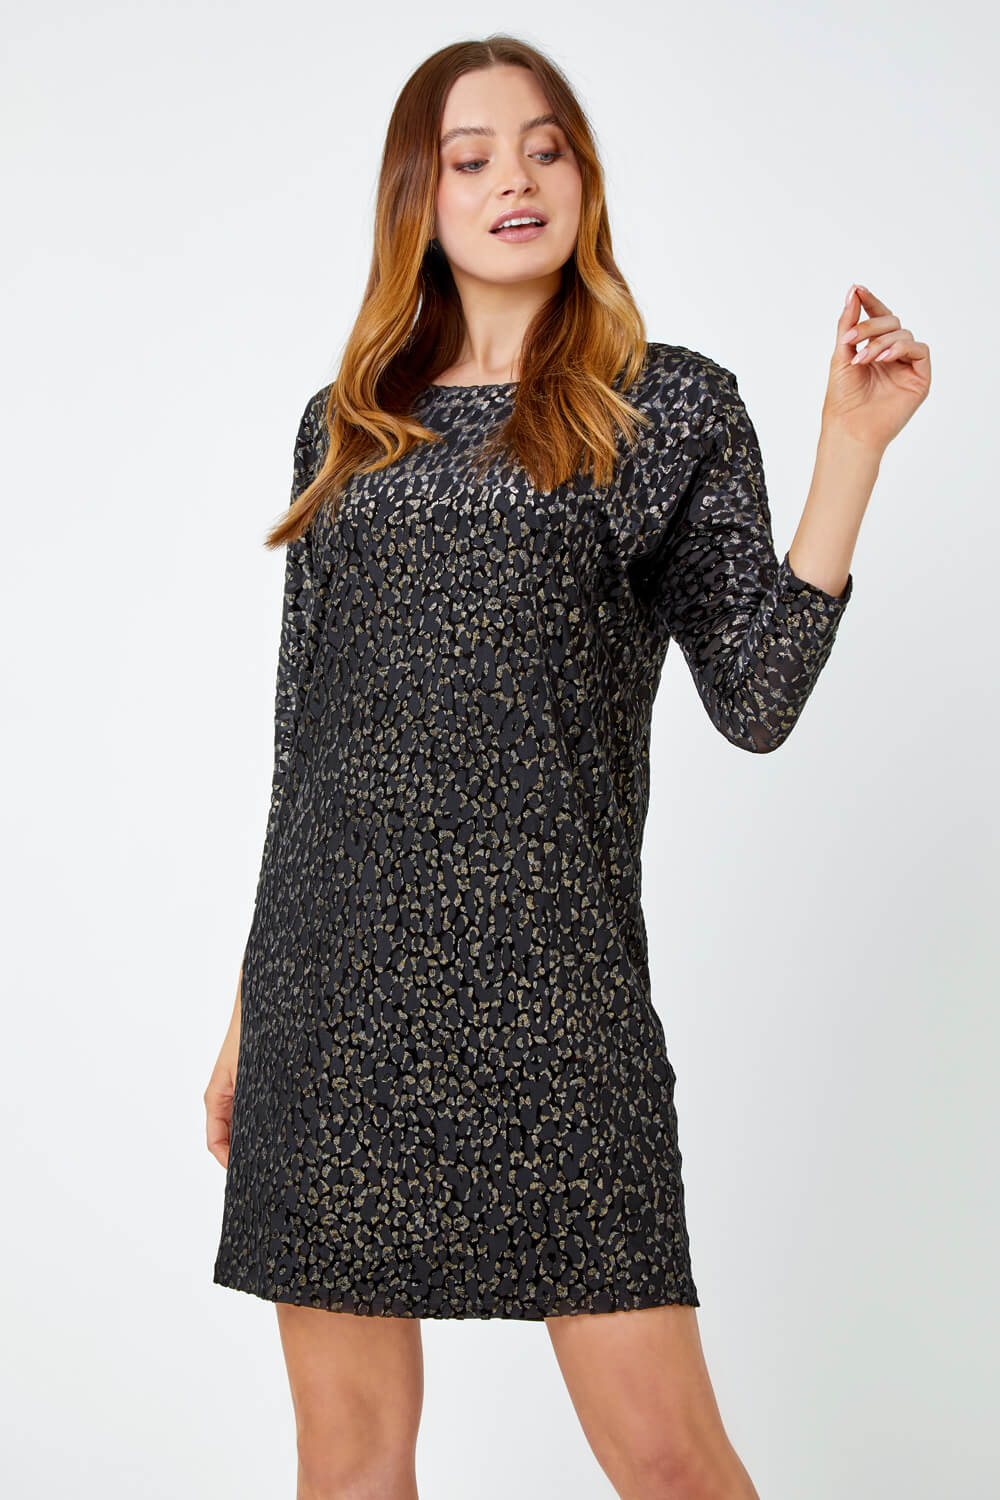 Black Shimmer Leopard Print Velvet Dress, Image 4 of 5